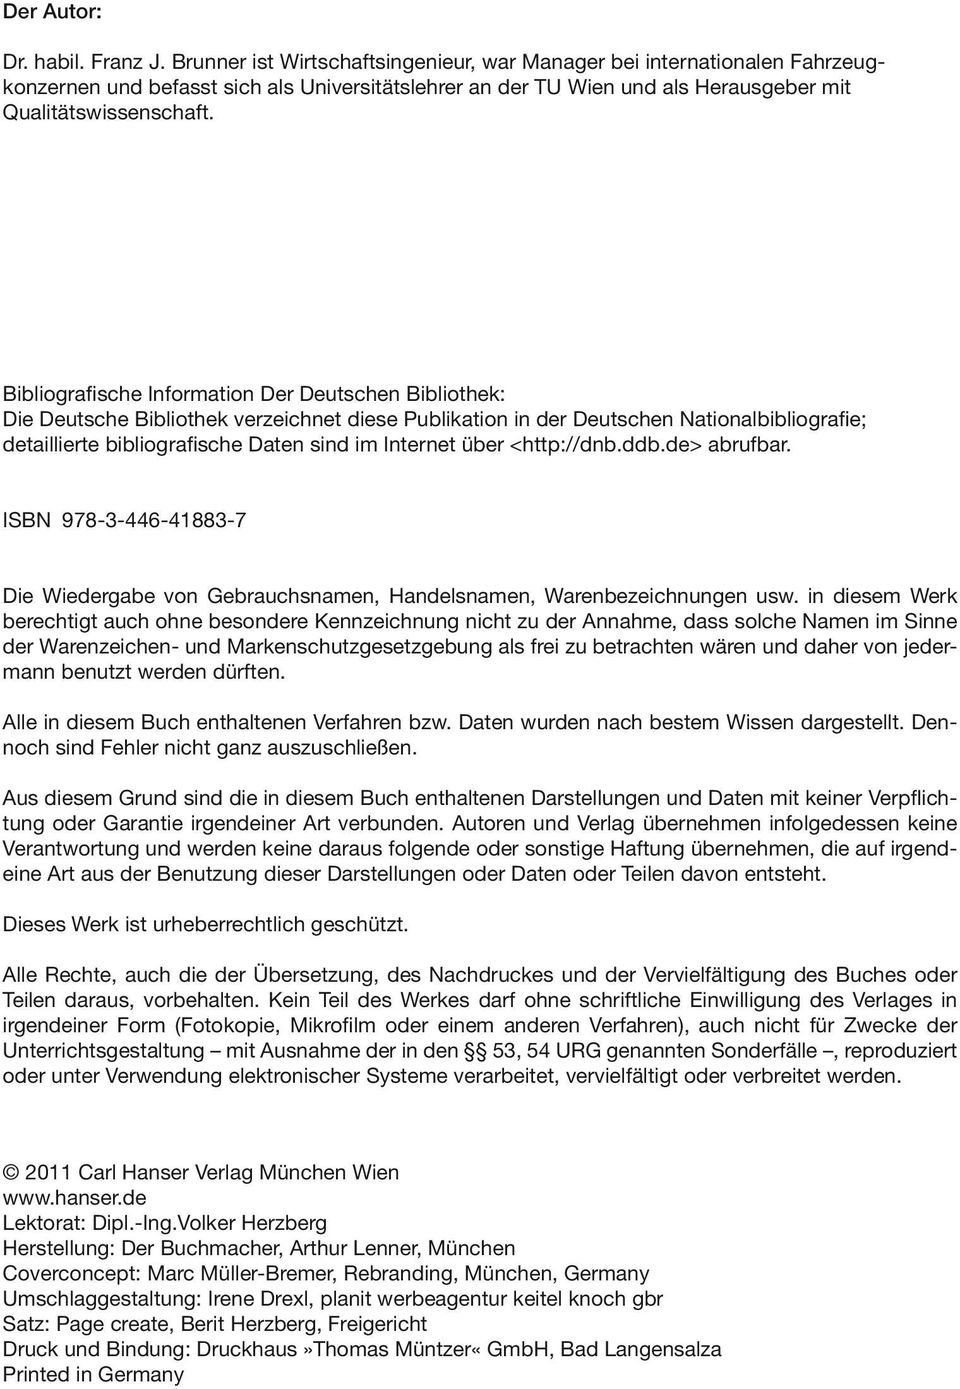 Bibliografische Information Der Deutschen Bibliothek: Die Deutsche Bibliothek verzeichnet diese Publikation in der Deutschen Nationalbibliografie; detaillierte bibliografische Daten sind im Internet